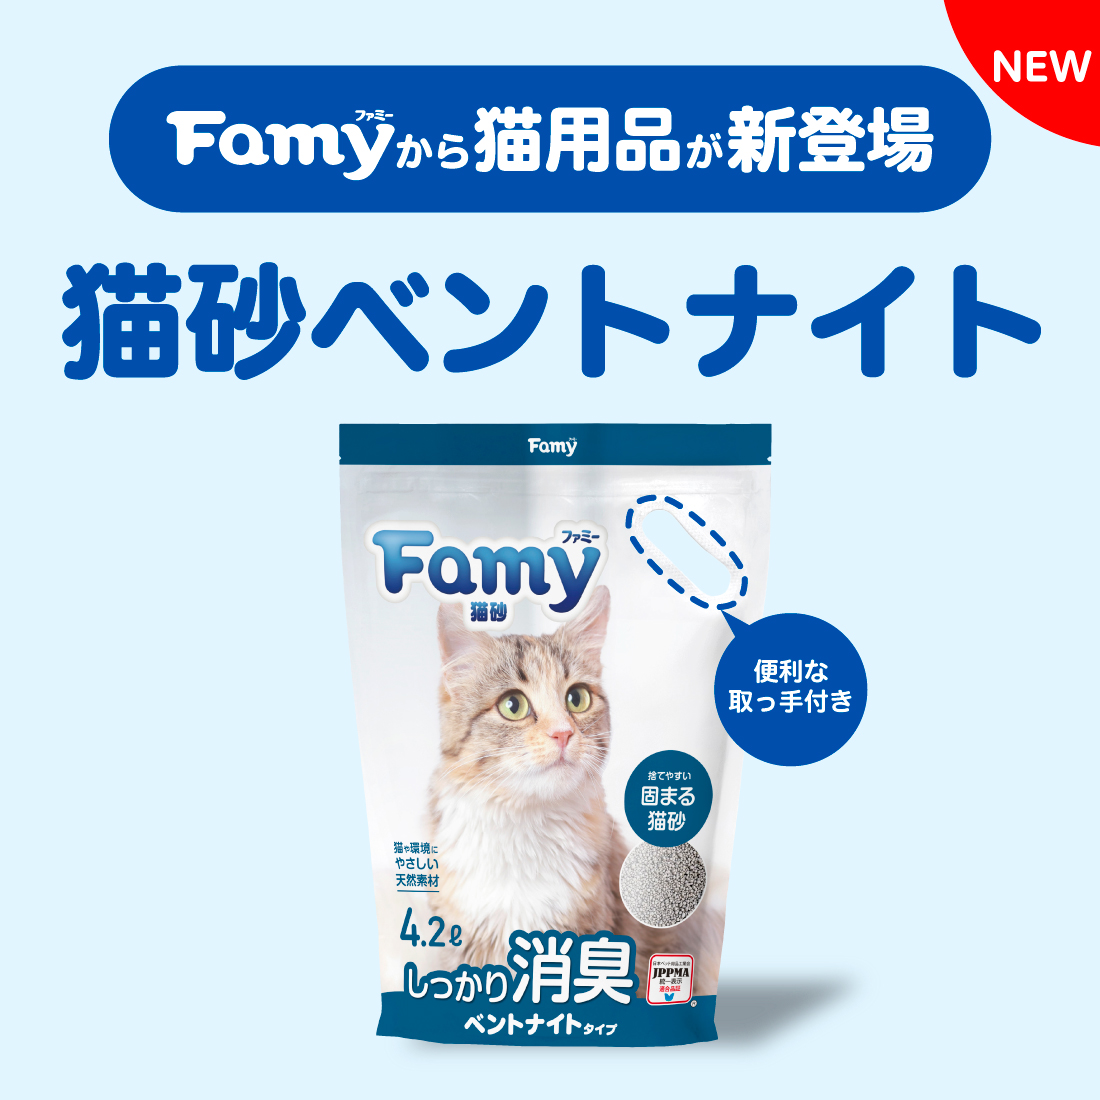 Famy猫砂 ベントナイトタイプ